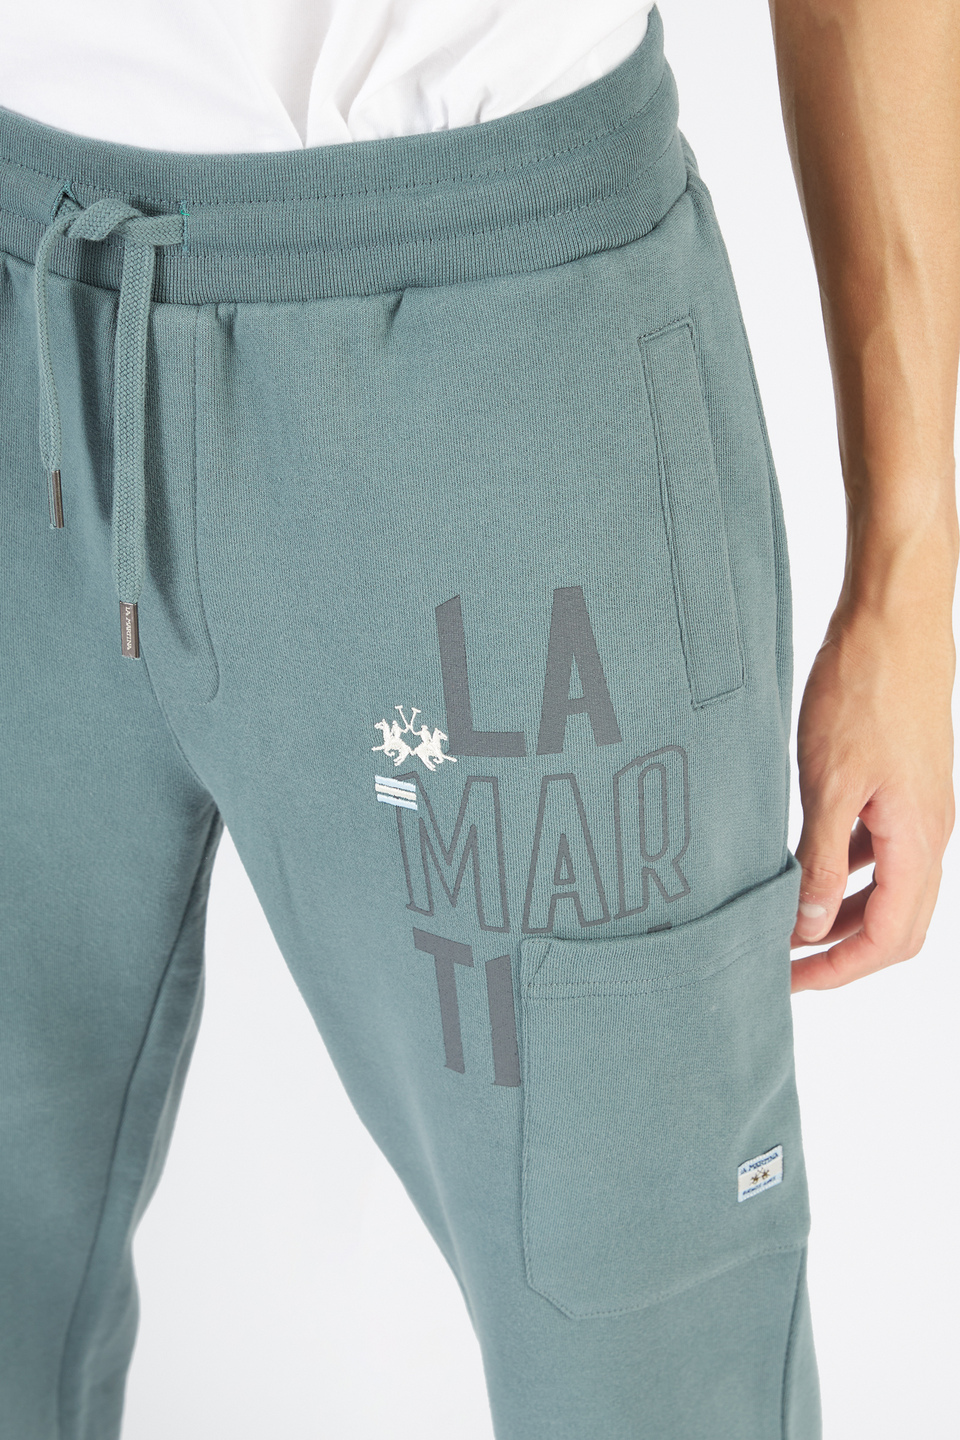 Pantalone da uomo modello jogger in cotone felpato regular fit | La Martina - Official Online Shop